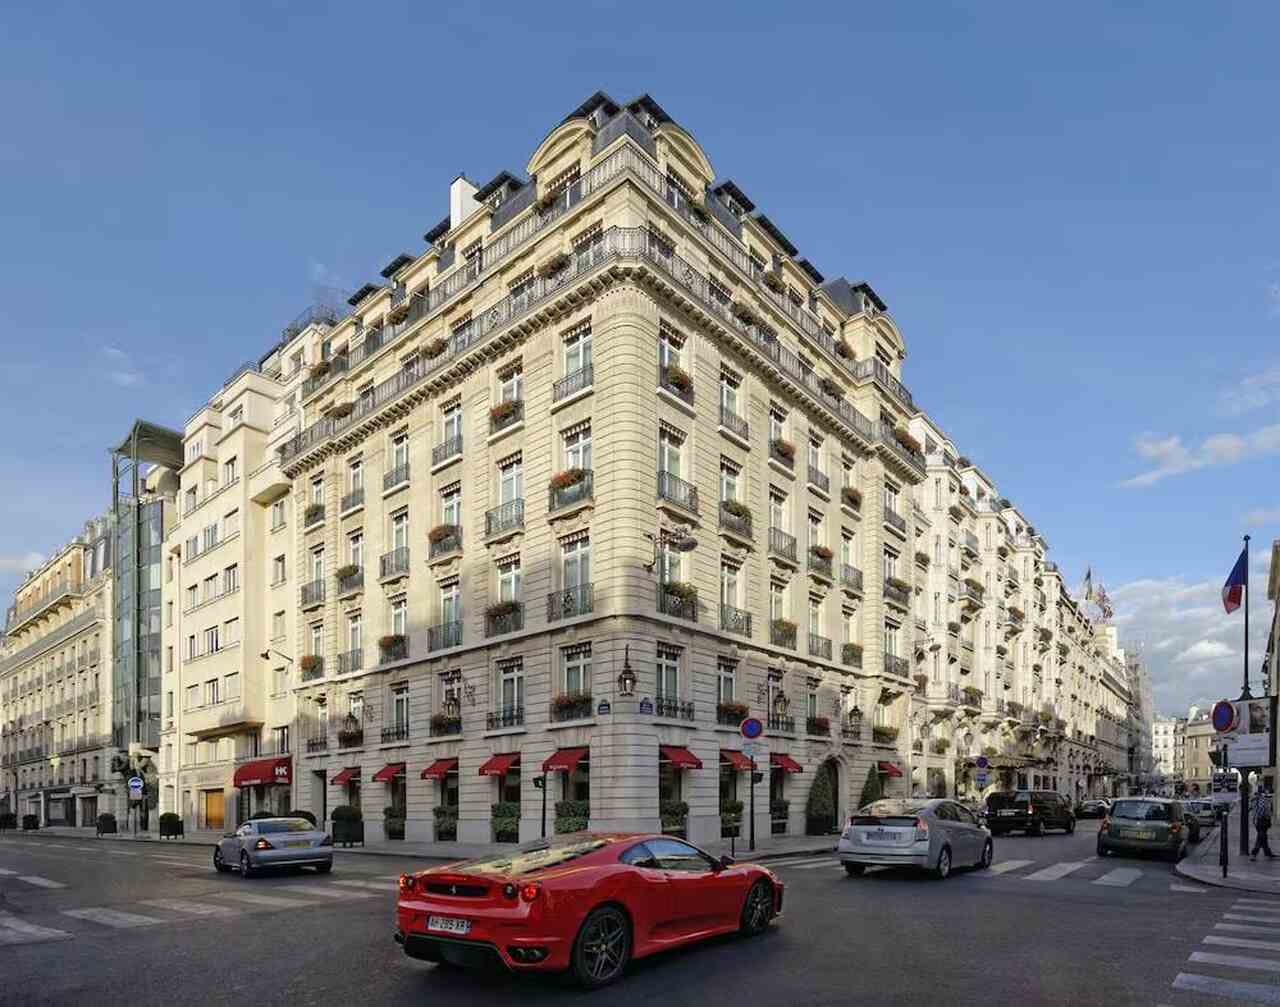  Hotel Le Bristol, París, Hotel de lujo